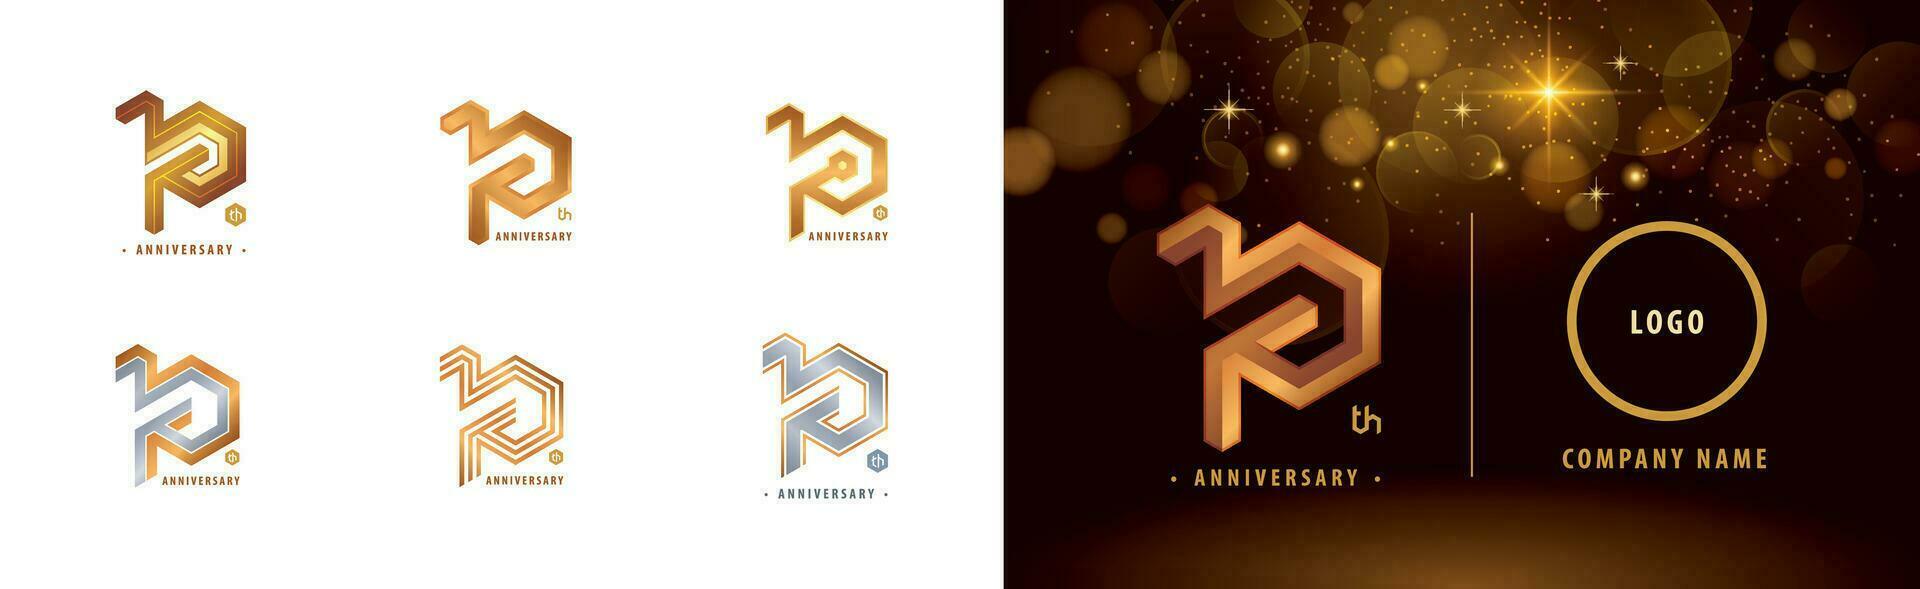 einstellen von 10 .. Jahrestag Logo Design, zehn Jahre Jahrestag Feier vektor